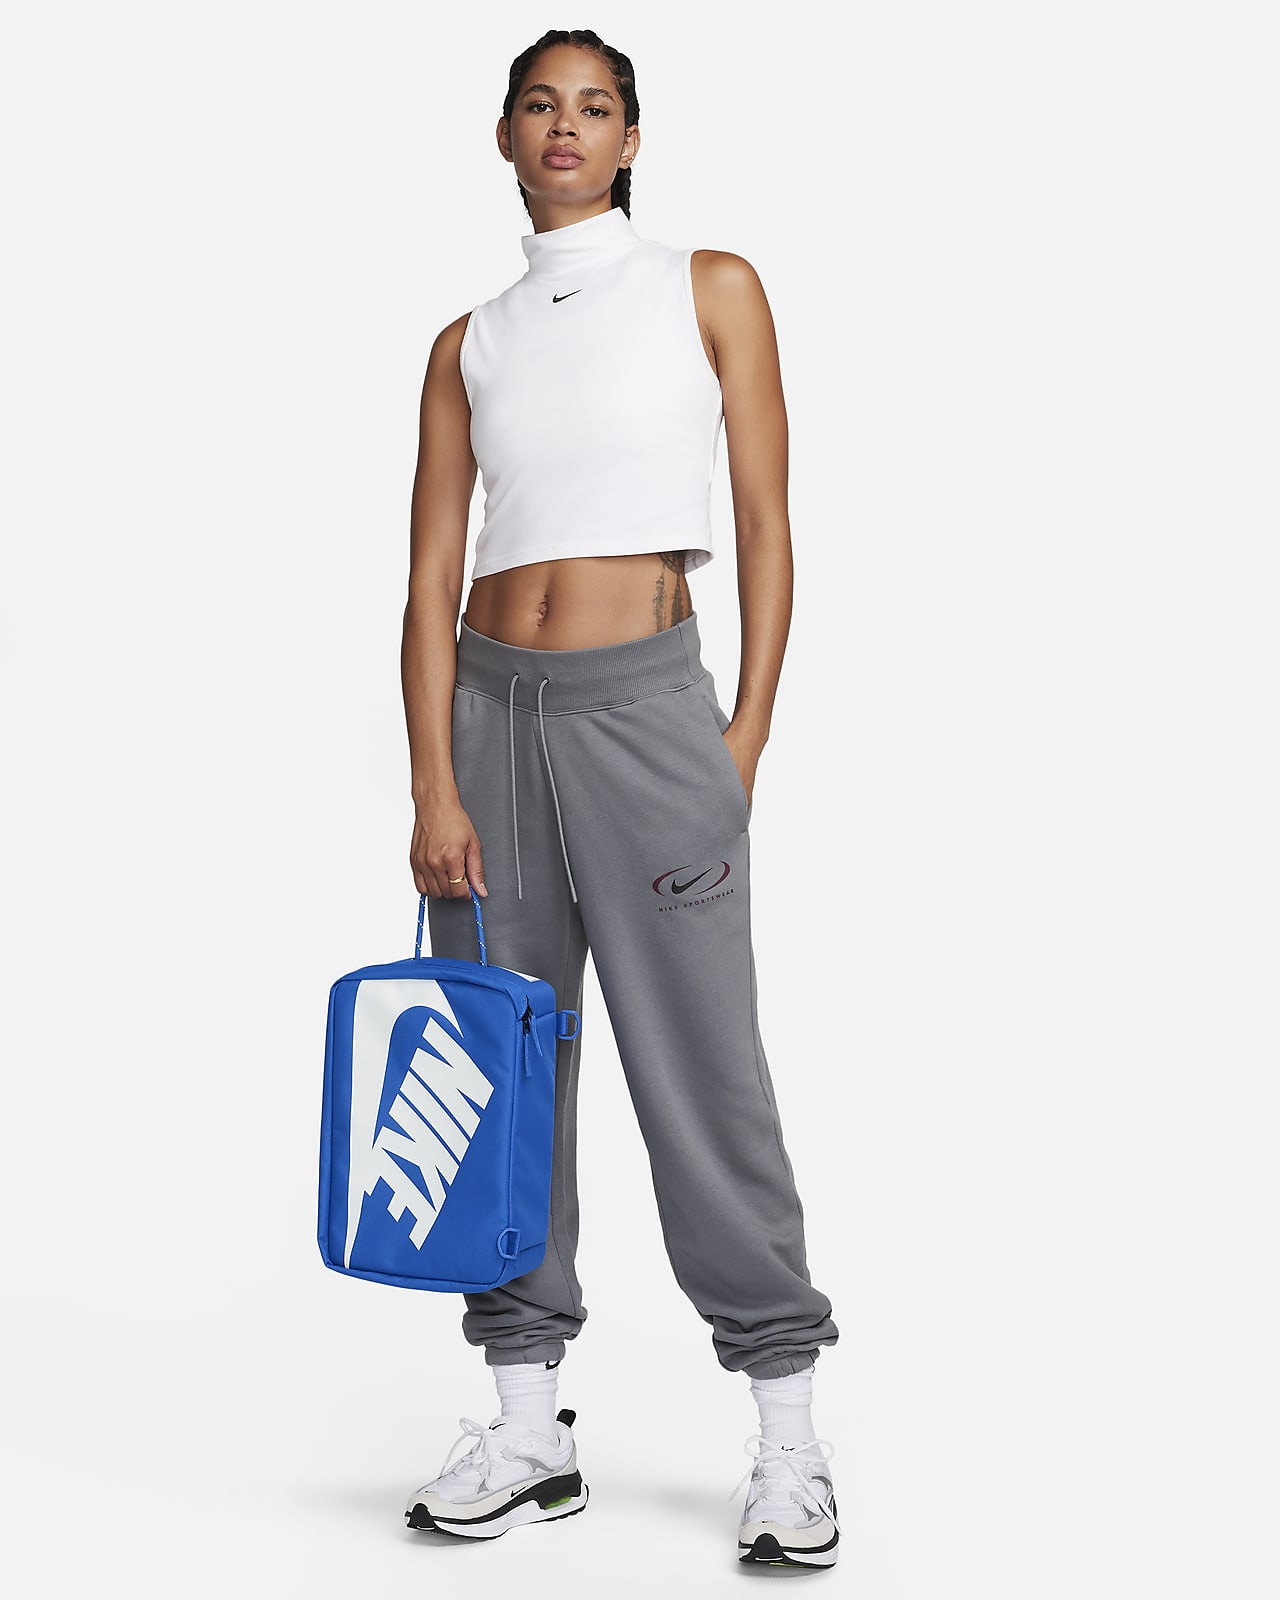 Nike Shoe Box Bag (12L).